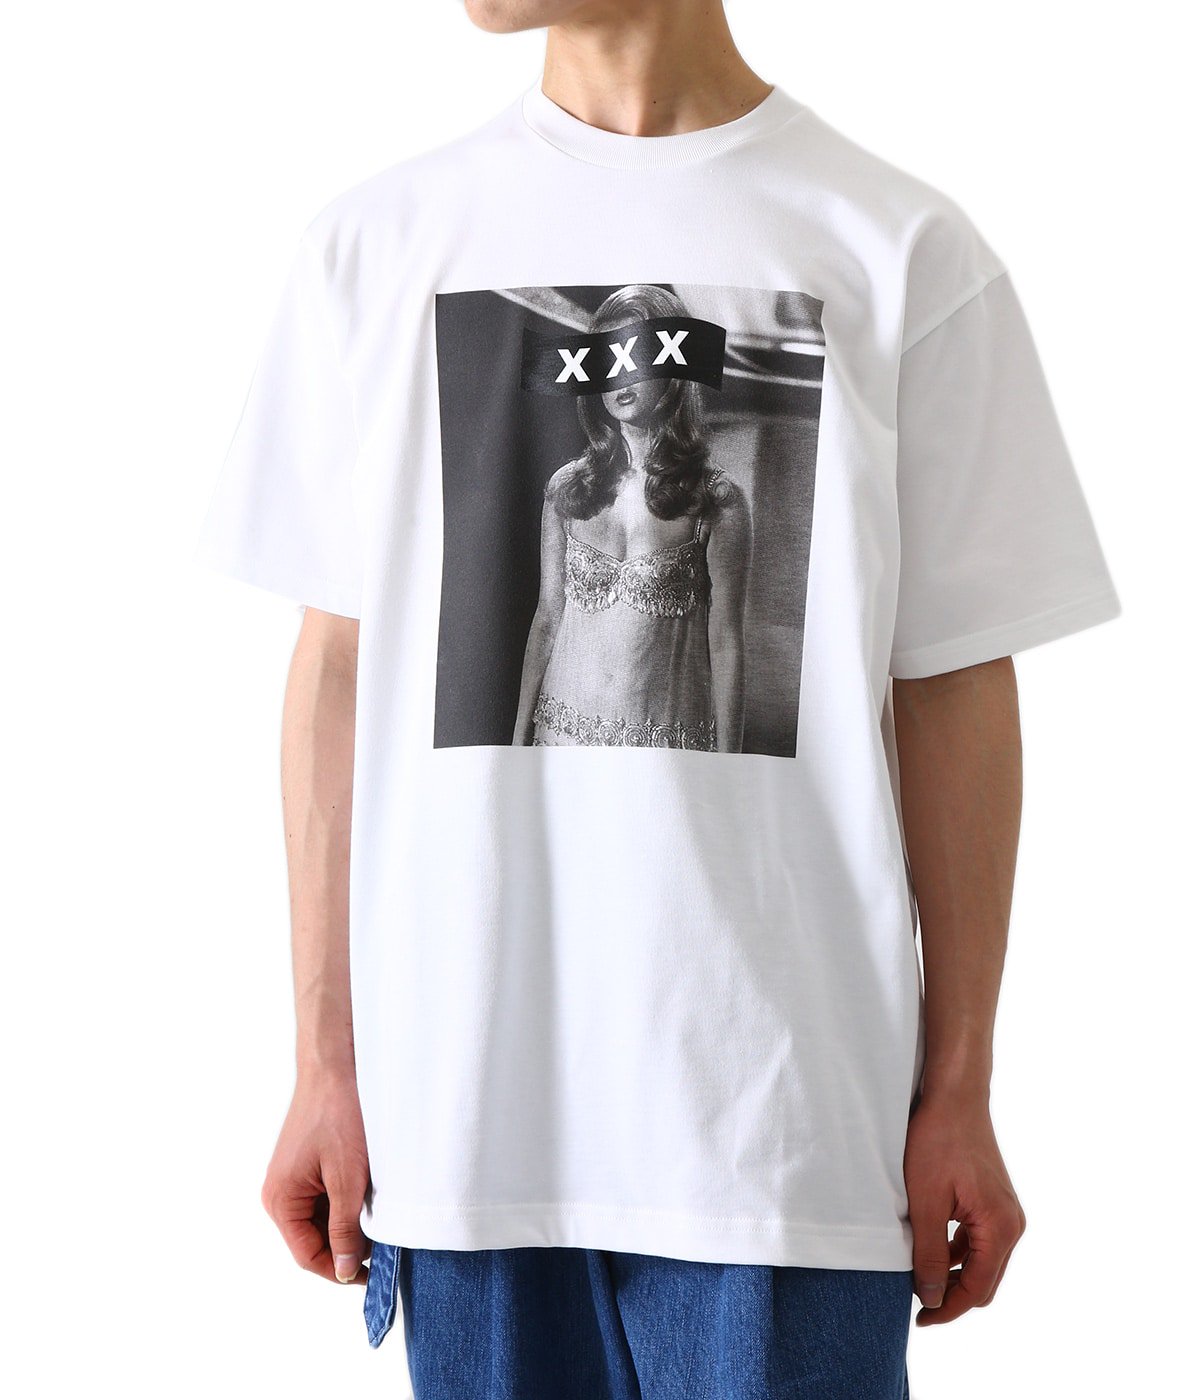 GODSELECTION XXX Travis Scott ローズロンT Tシャツ/カットソー(七分/長袖) 公式半額